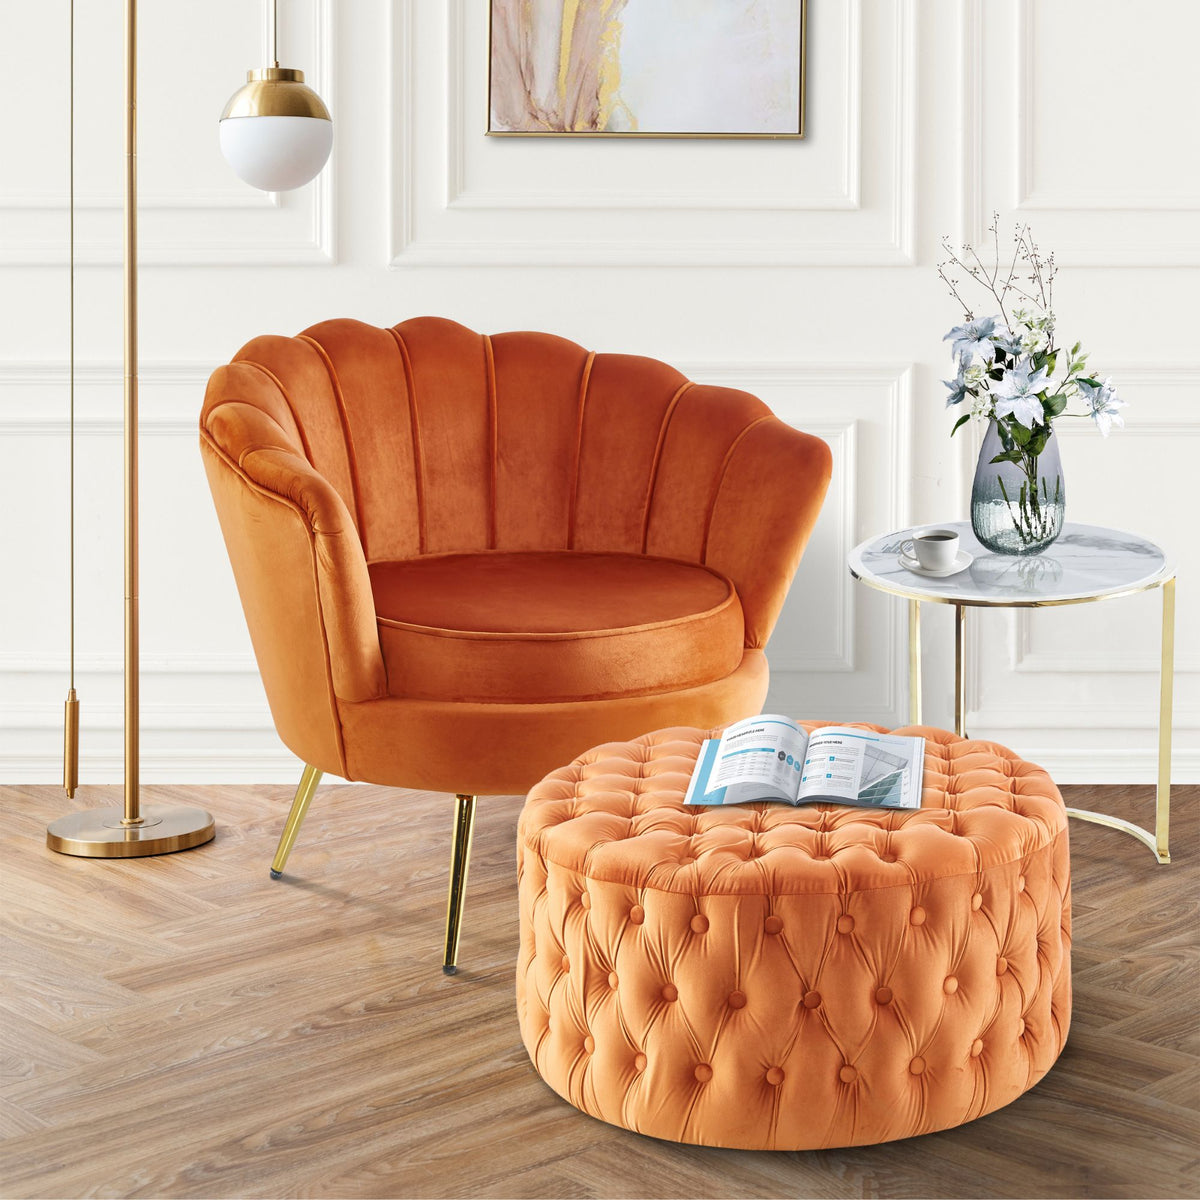 Uzona Tufted Velvet Fabric Round Ottoman Footstools - Cinnamon - Notbrand